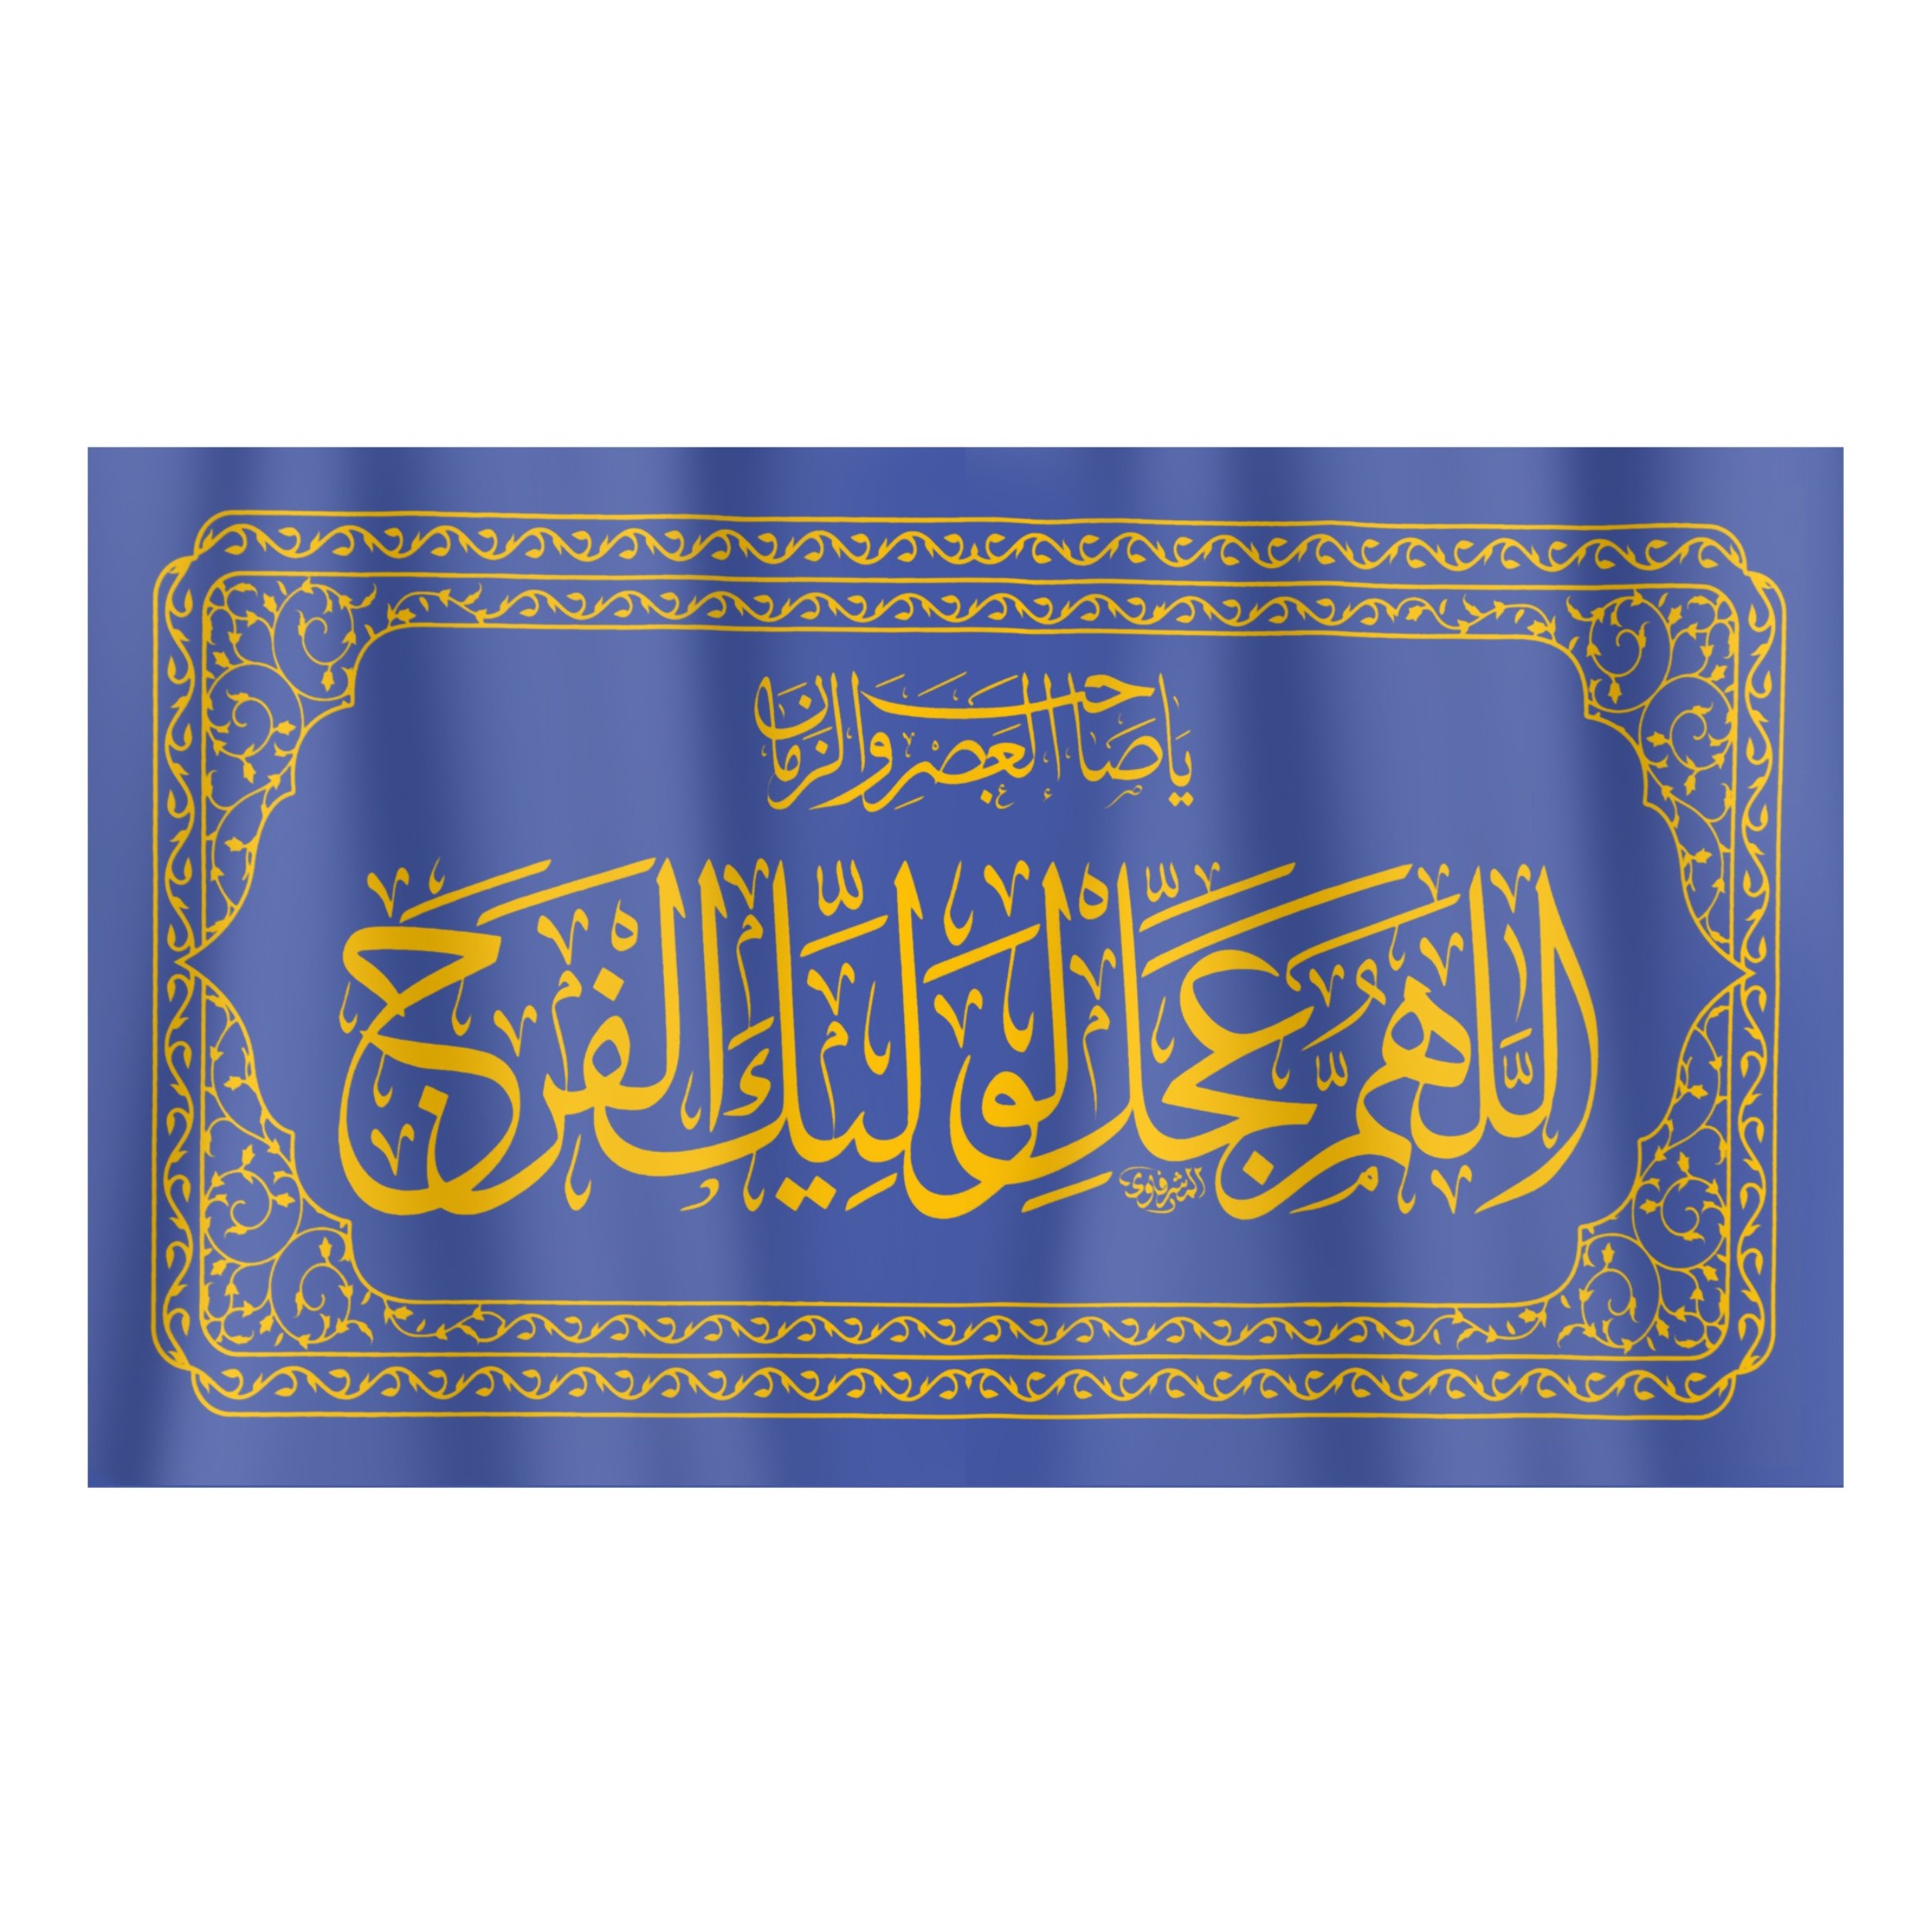 پرچم طرح اللهم عجل لولیک الفرج کد 20001339